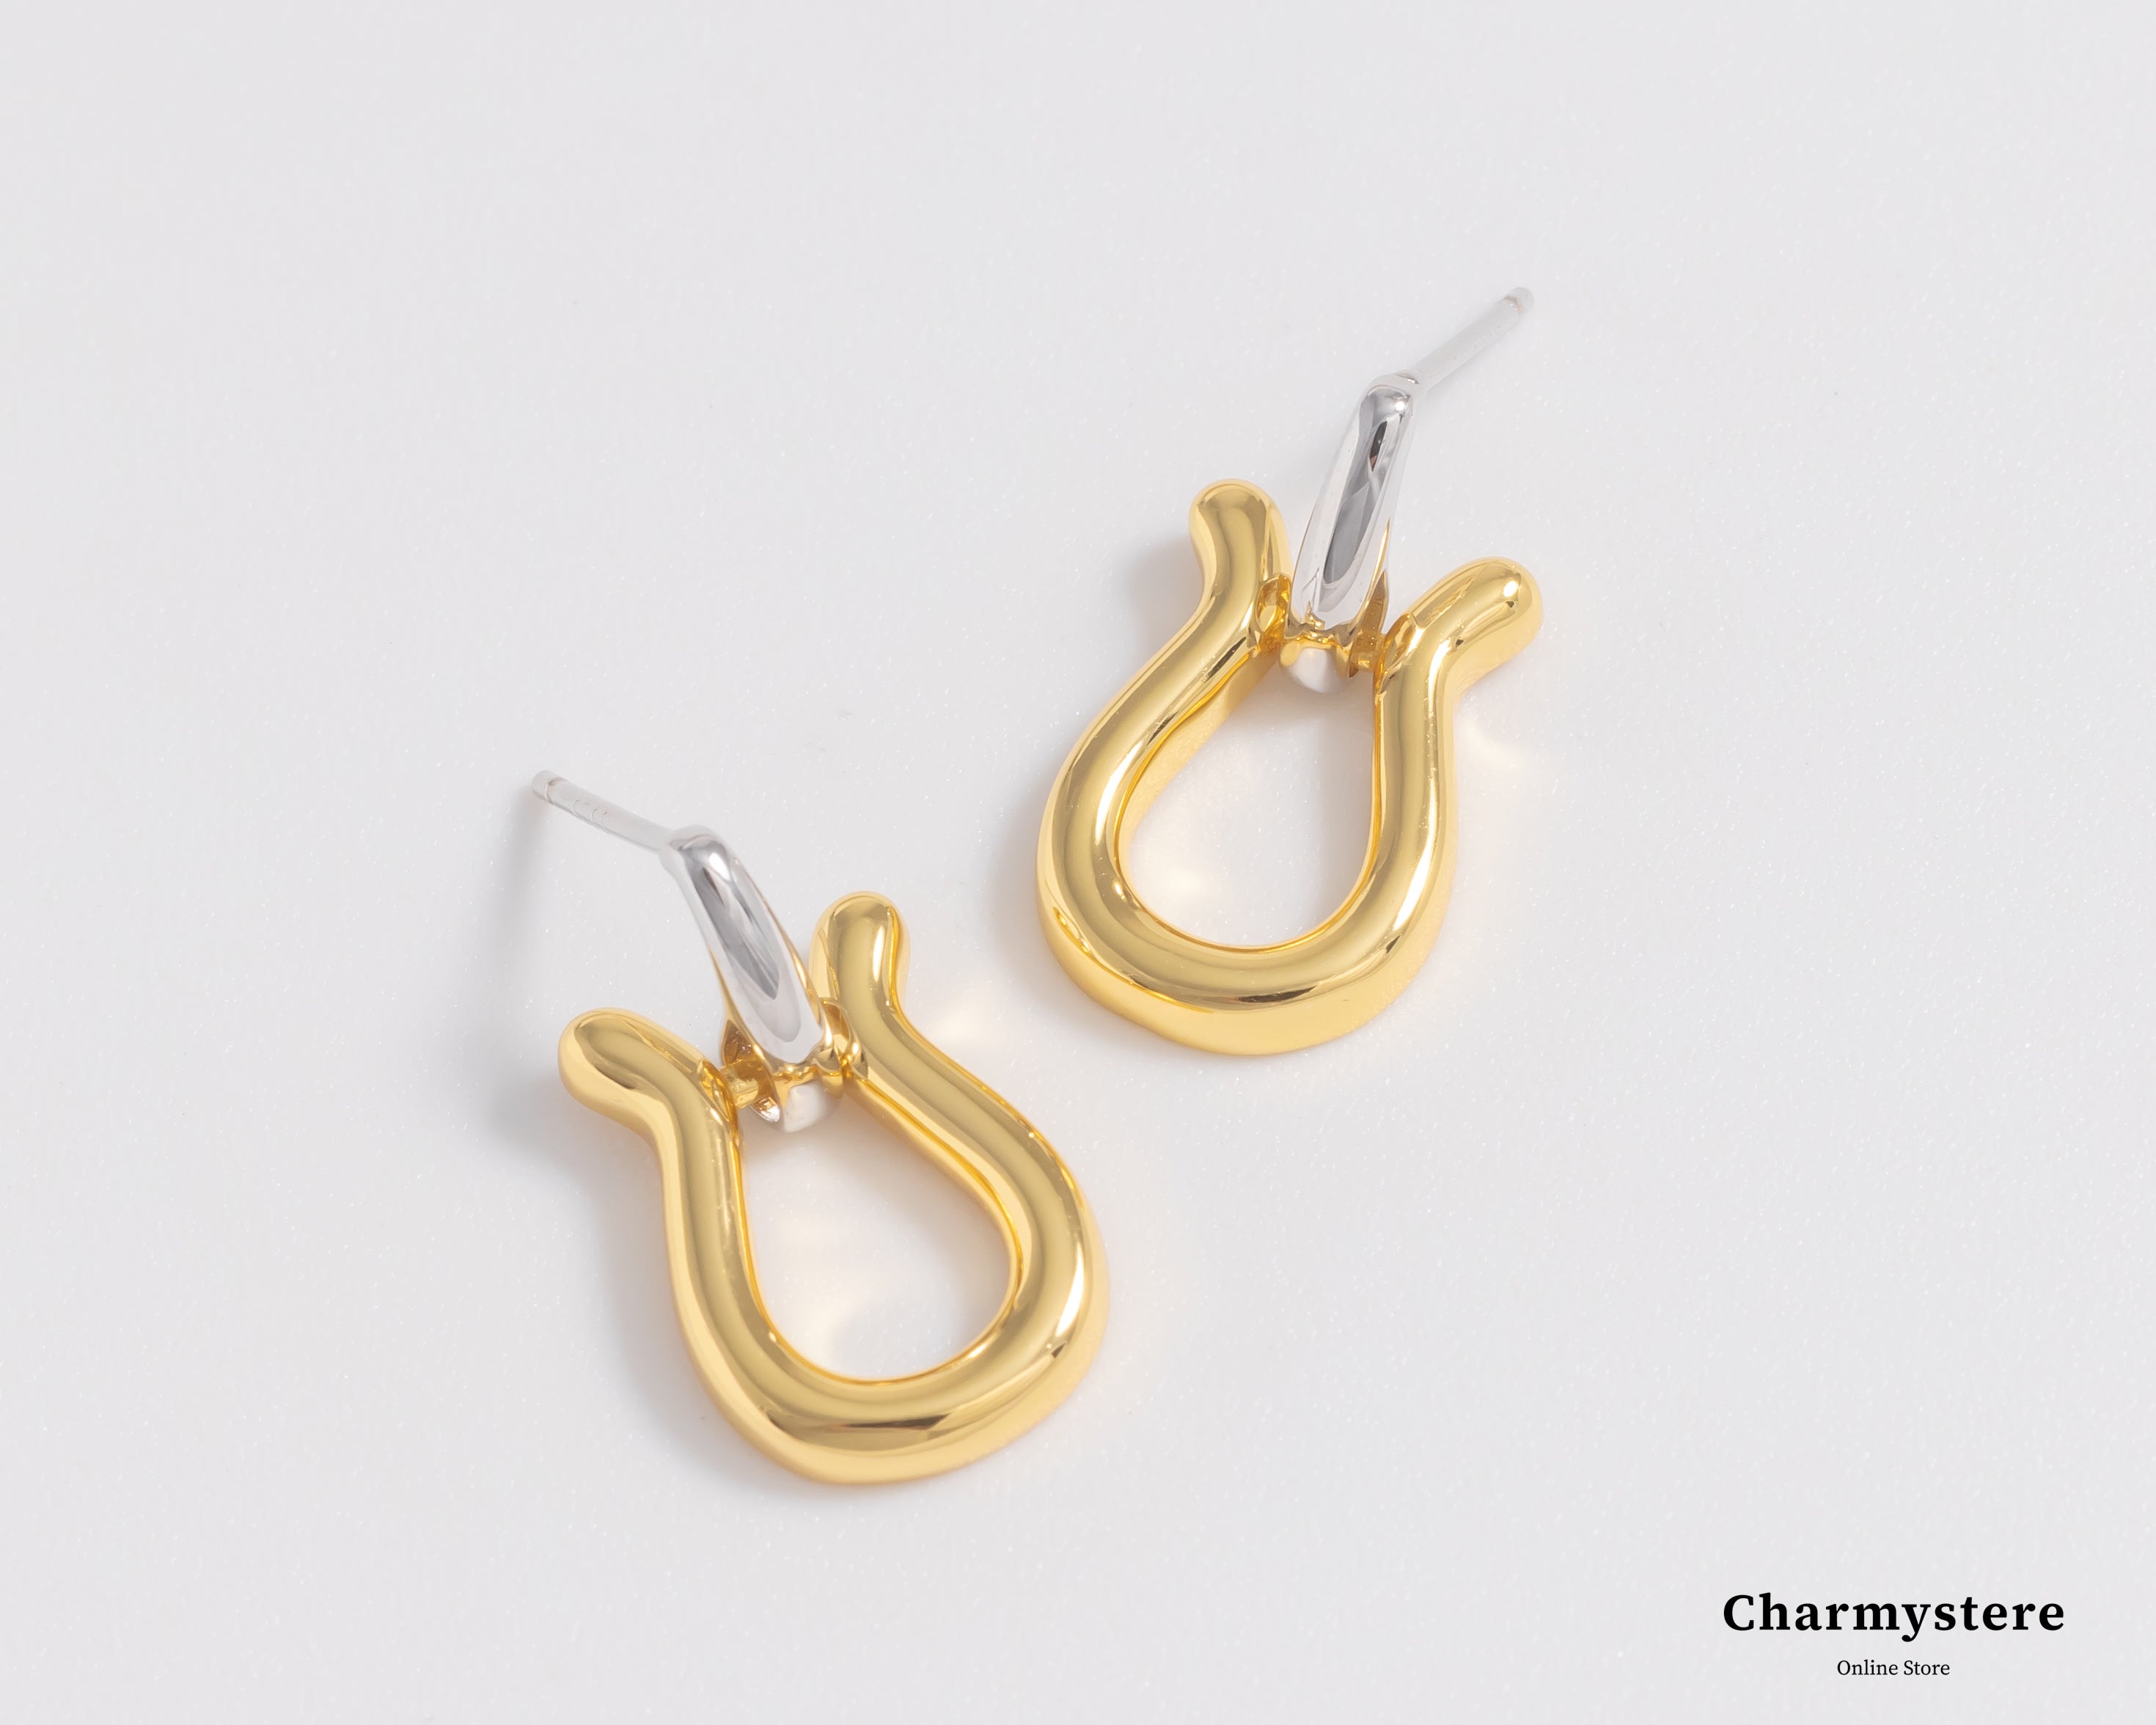 bicolor horseshoe earrings